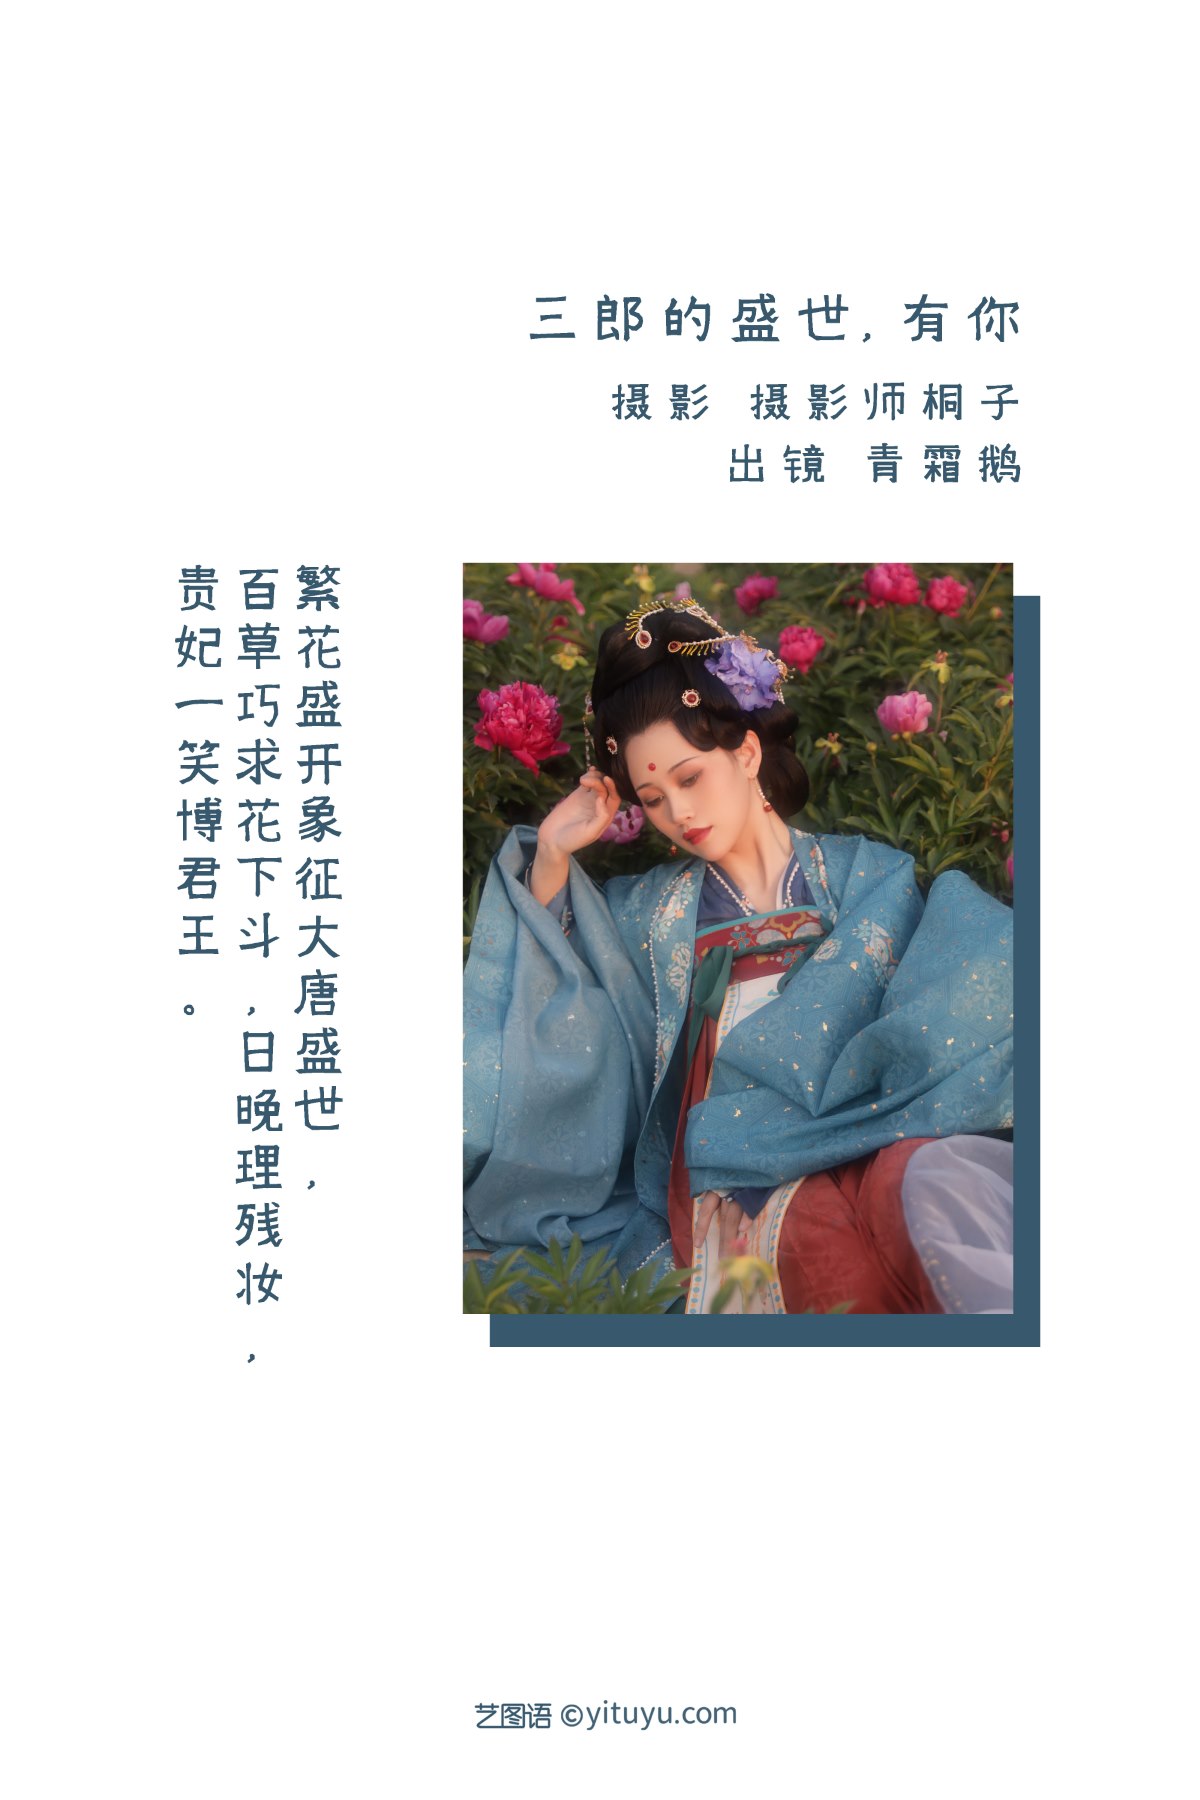 YiTuYu艺图语 Vol 2265 Qing Shuang E 0001 4480286325.jpg